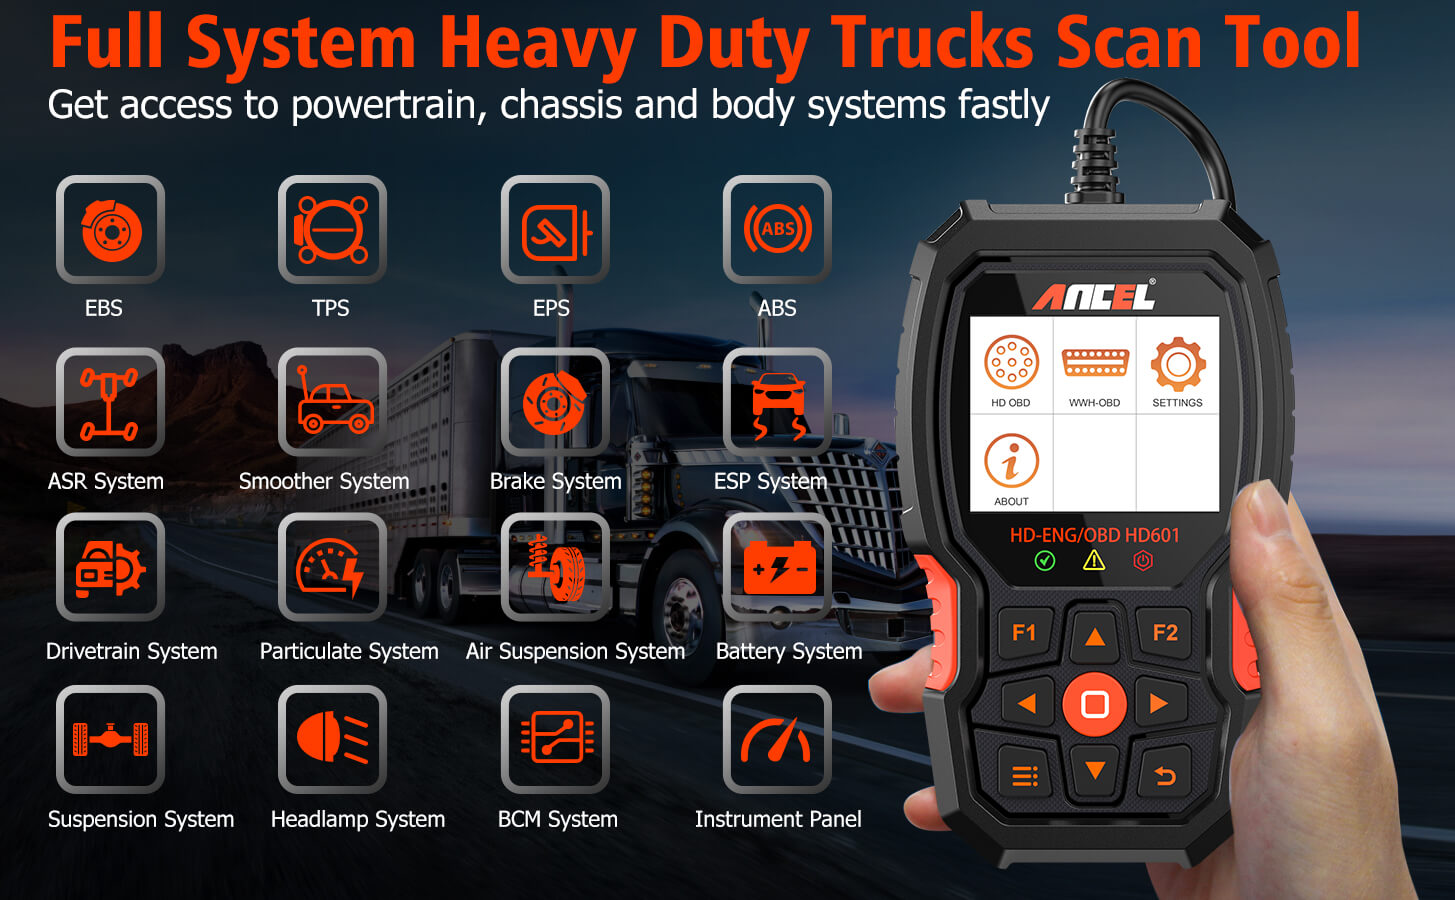 ANCEL HD601 Heavy Duty Truck Scanner